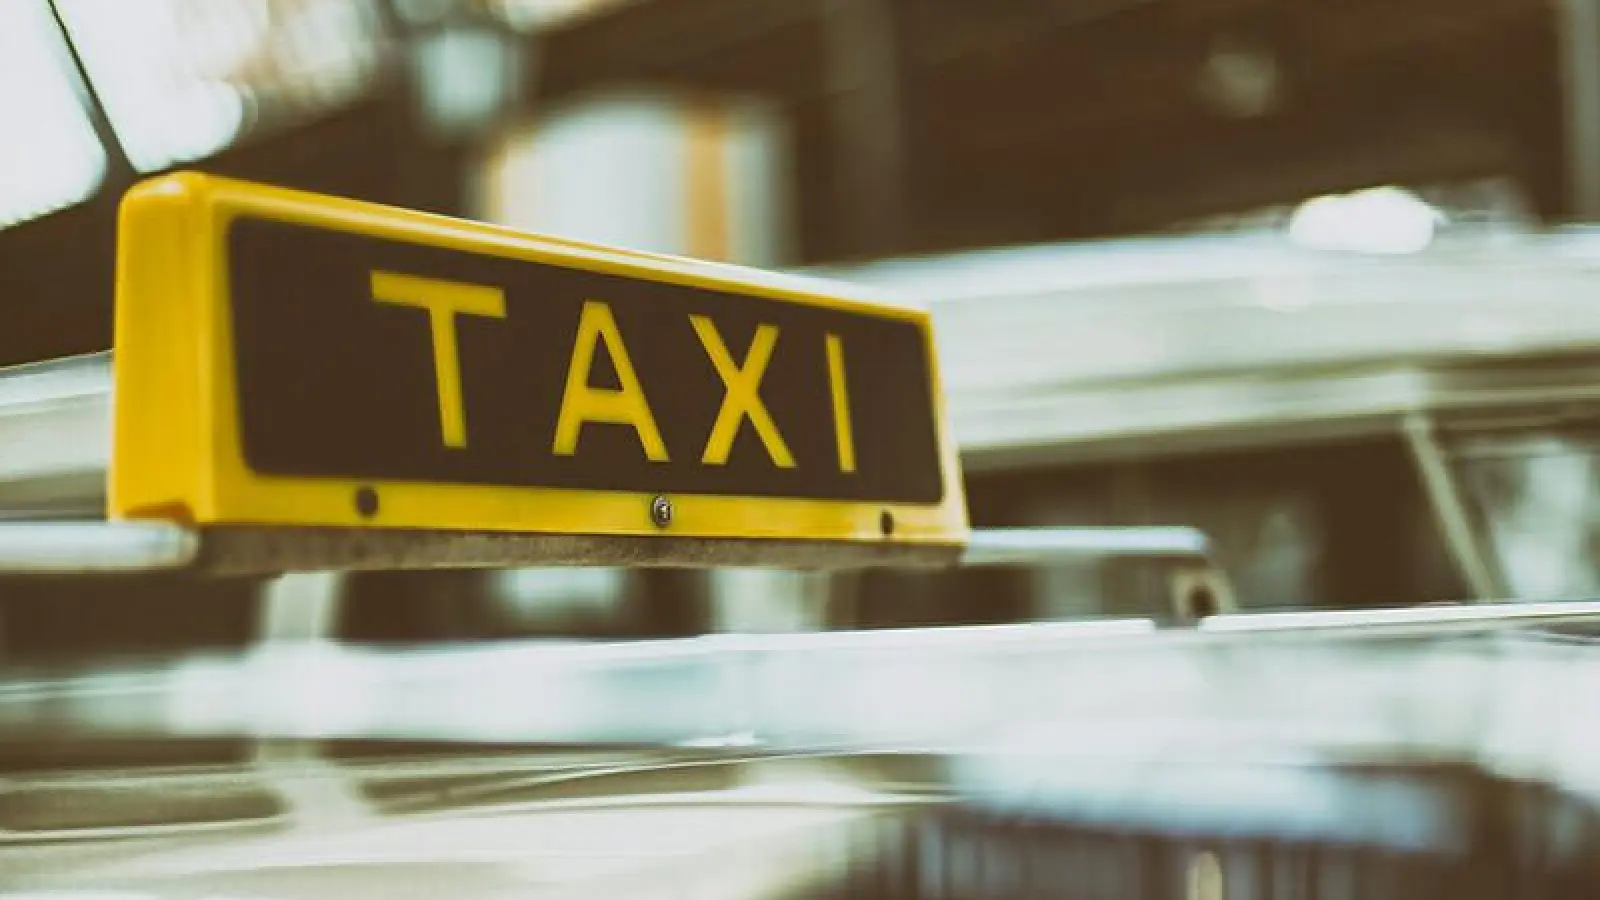 Taxi-Schild- Foto pixabay (Foto: pixabay)